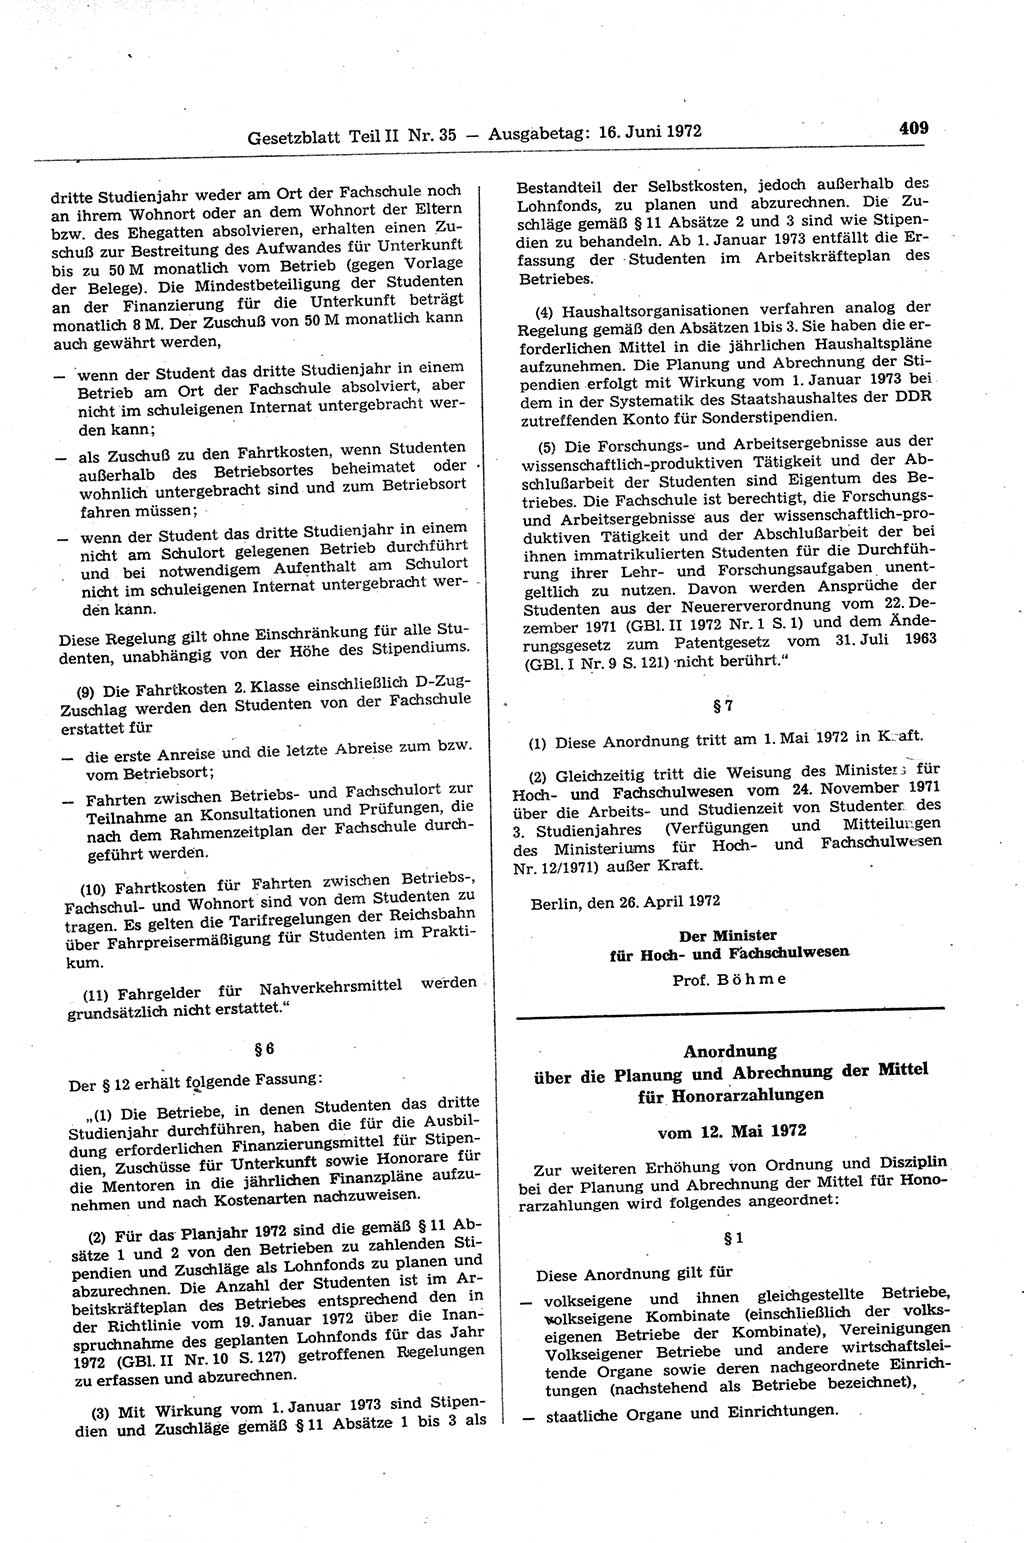 Gesetzblatt (GBl.) der Deutschen Demokratischen Republik (DDR) Teil ⅠⅠ 1972, Seite 409 (GBl. DDR ⅠⅠ 1972, S. 409)